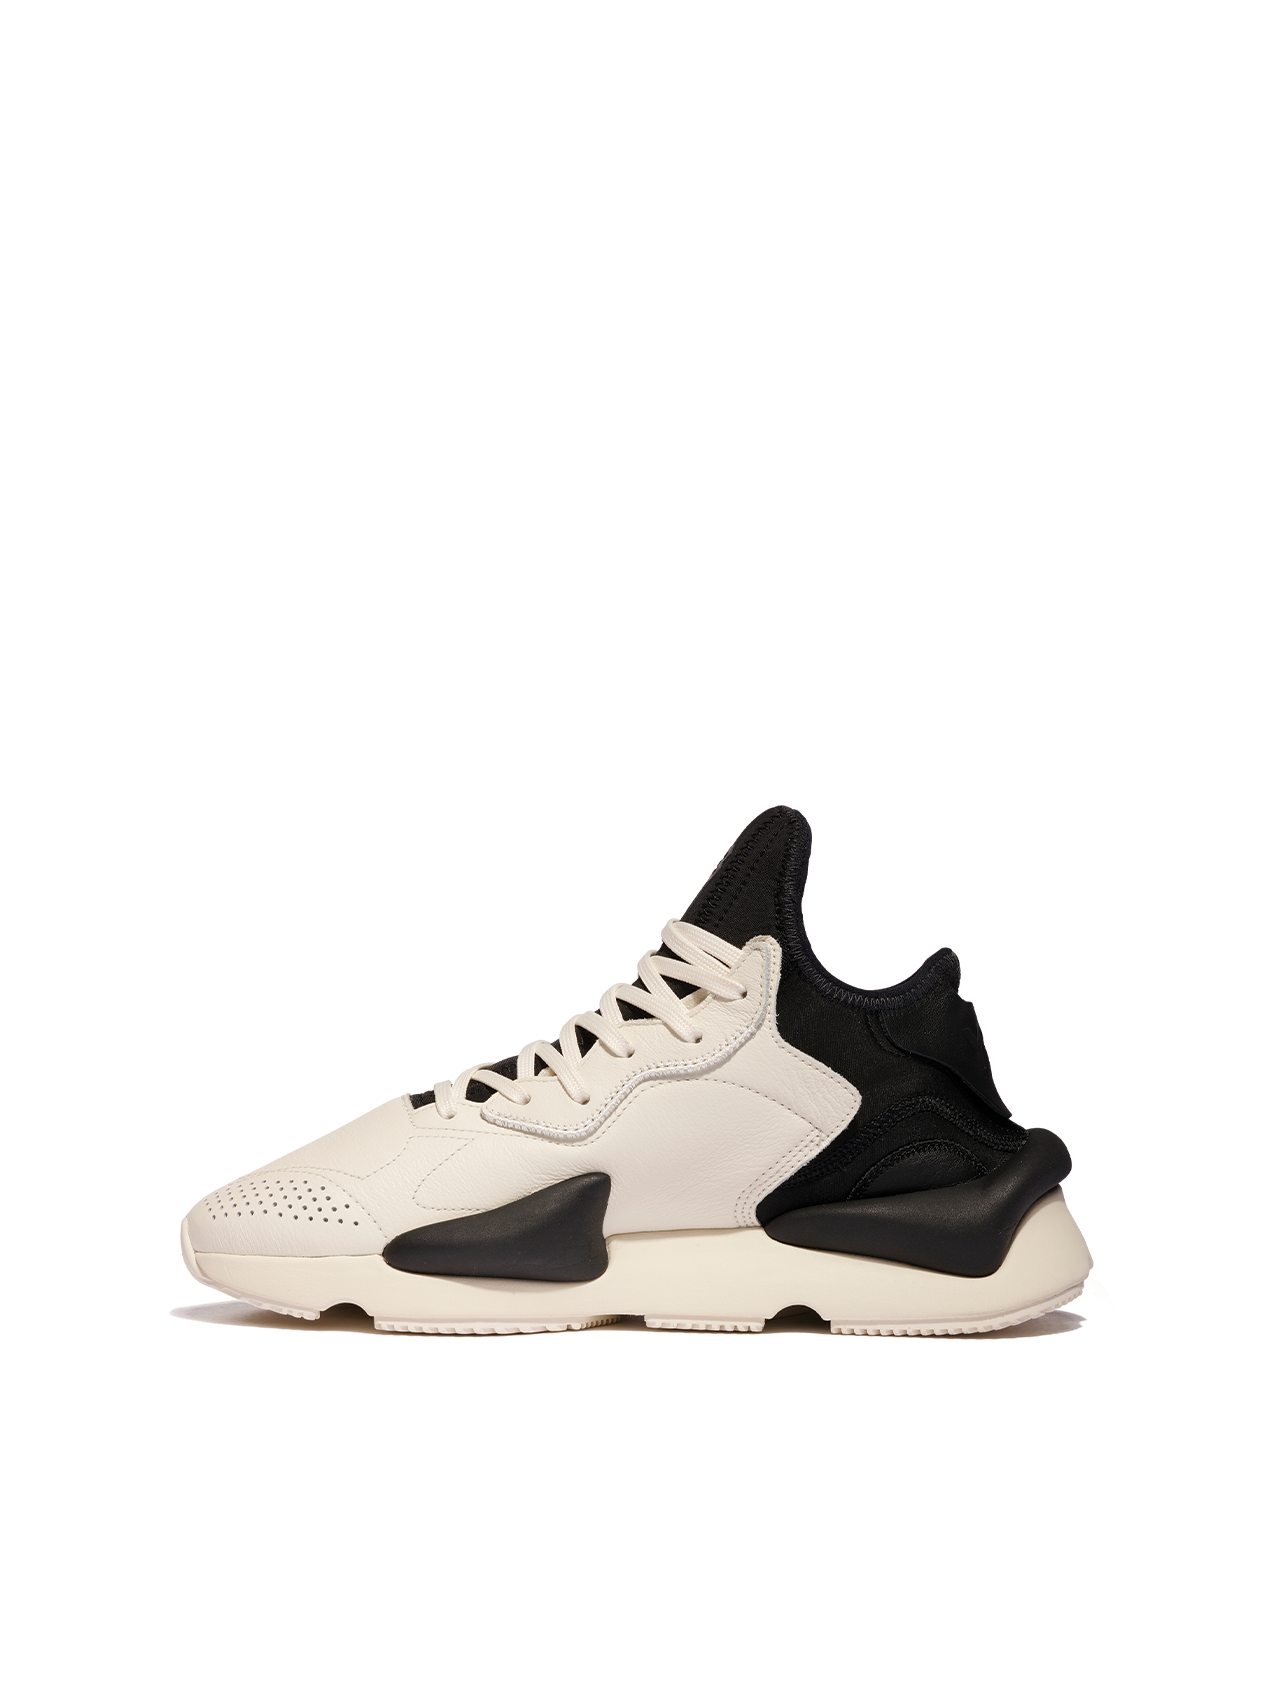 Y-3 Off White/Black Kaiwa Sneakers